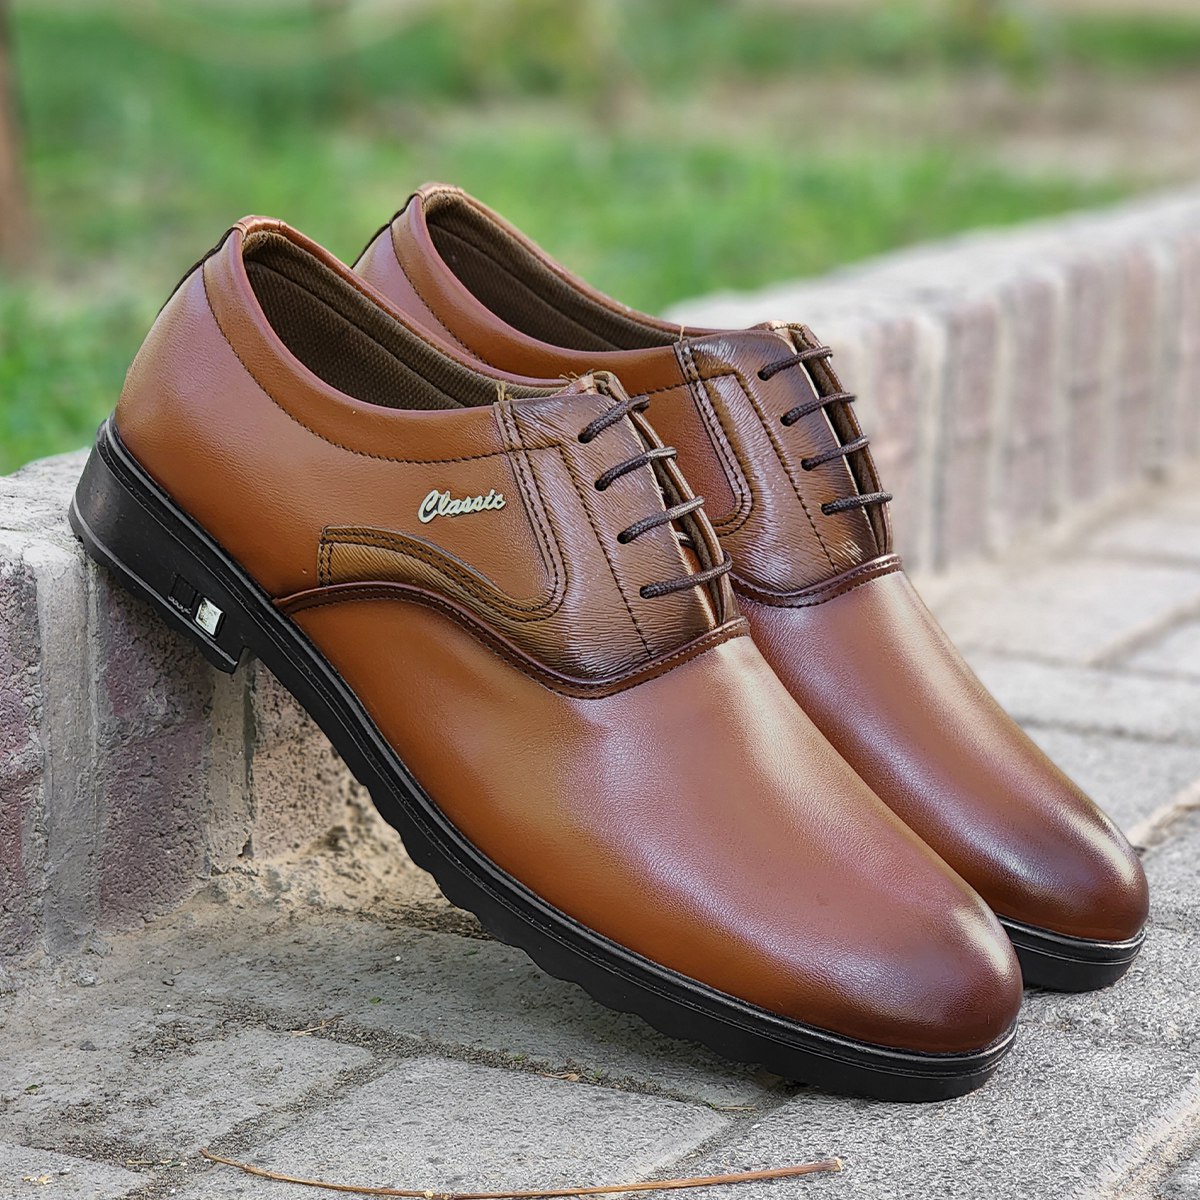 کفش رسمی مردانه بنسون کدمحصول 1929855 مشاهده قیمت و یا خرید اینجا کلیک کنید 🔺کفش رسمی مردانه بنسون
♦️جنس رویه: چرم مصنوعی
♦️جنس زیره: Pu